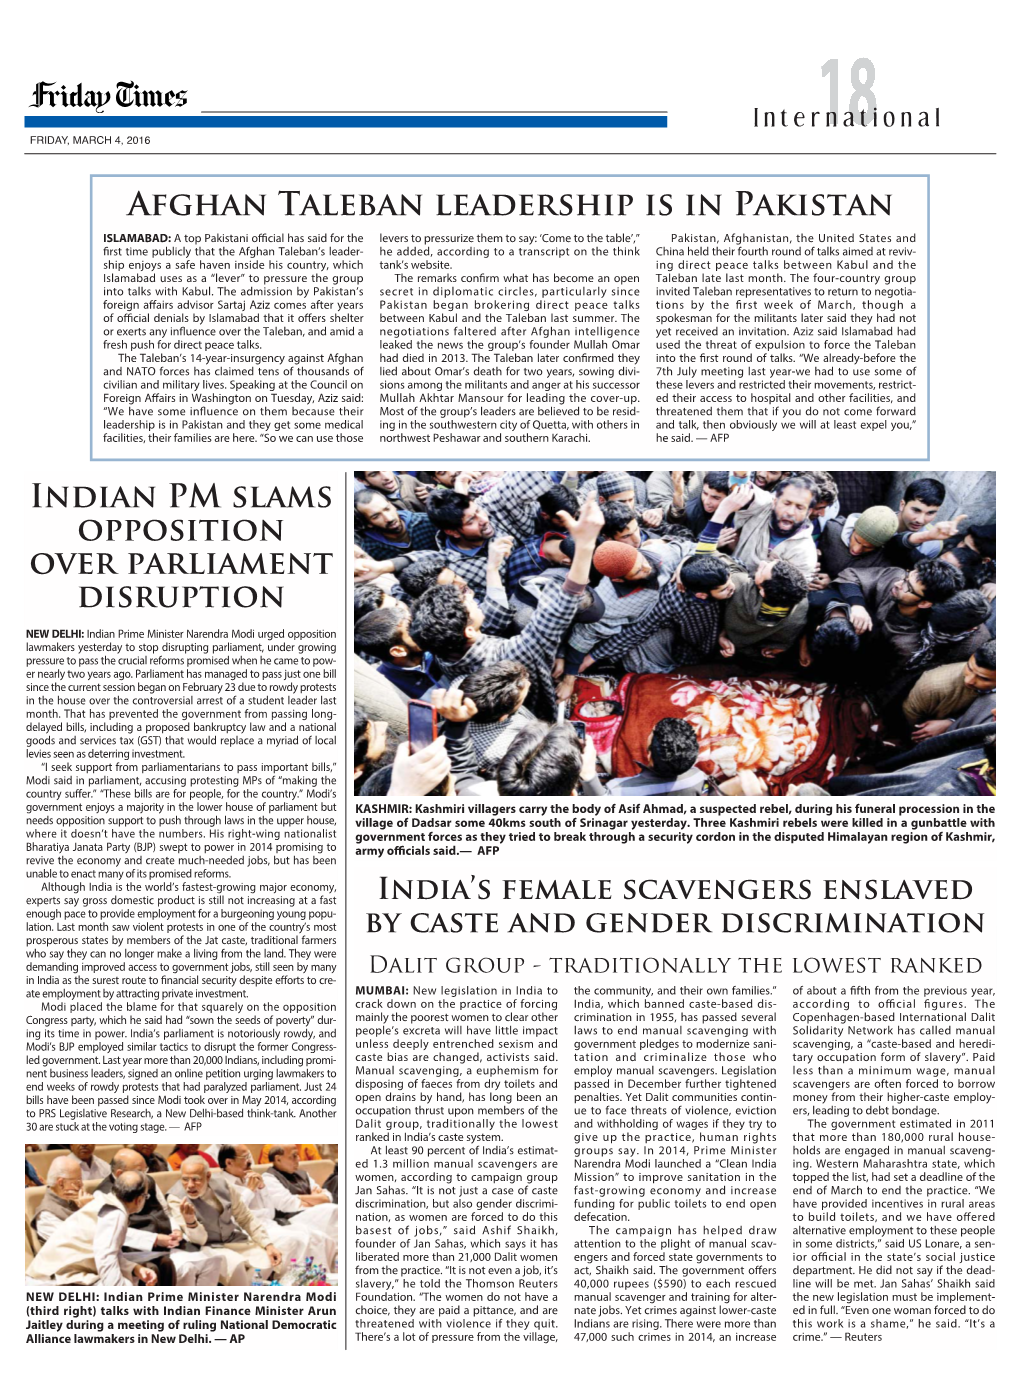 Afghan Taleban Leadership Is in Pakistan Indian PM Slams